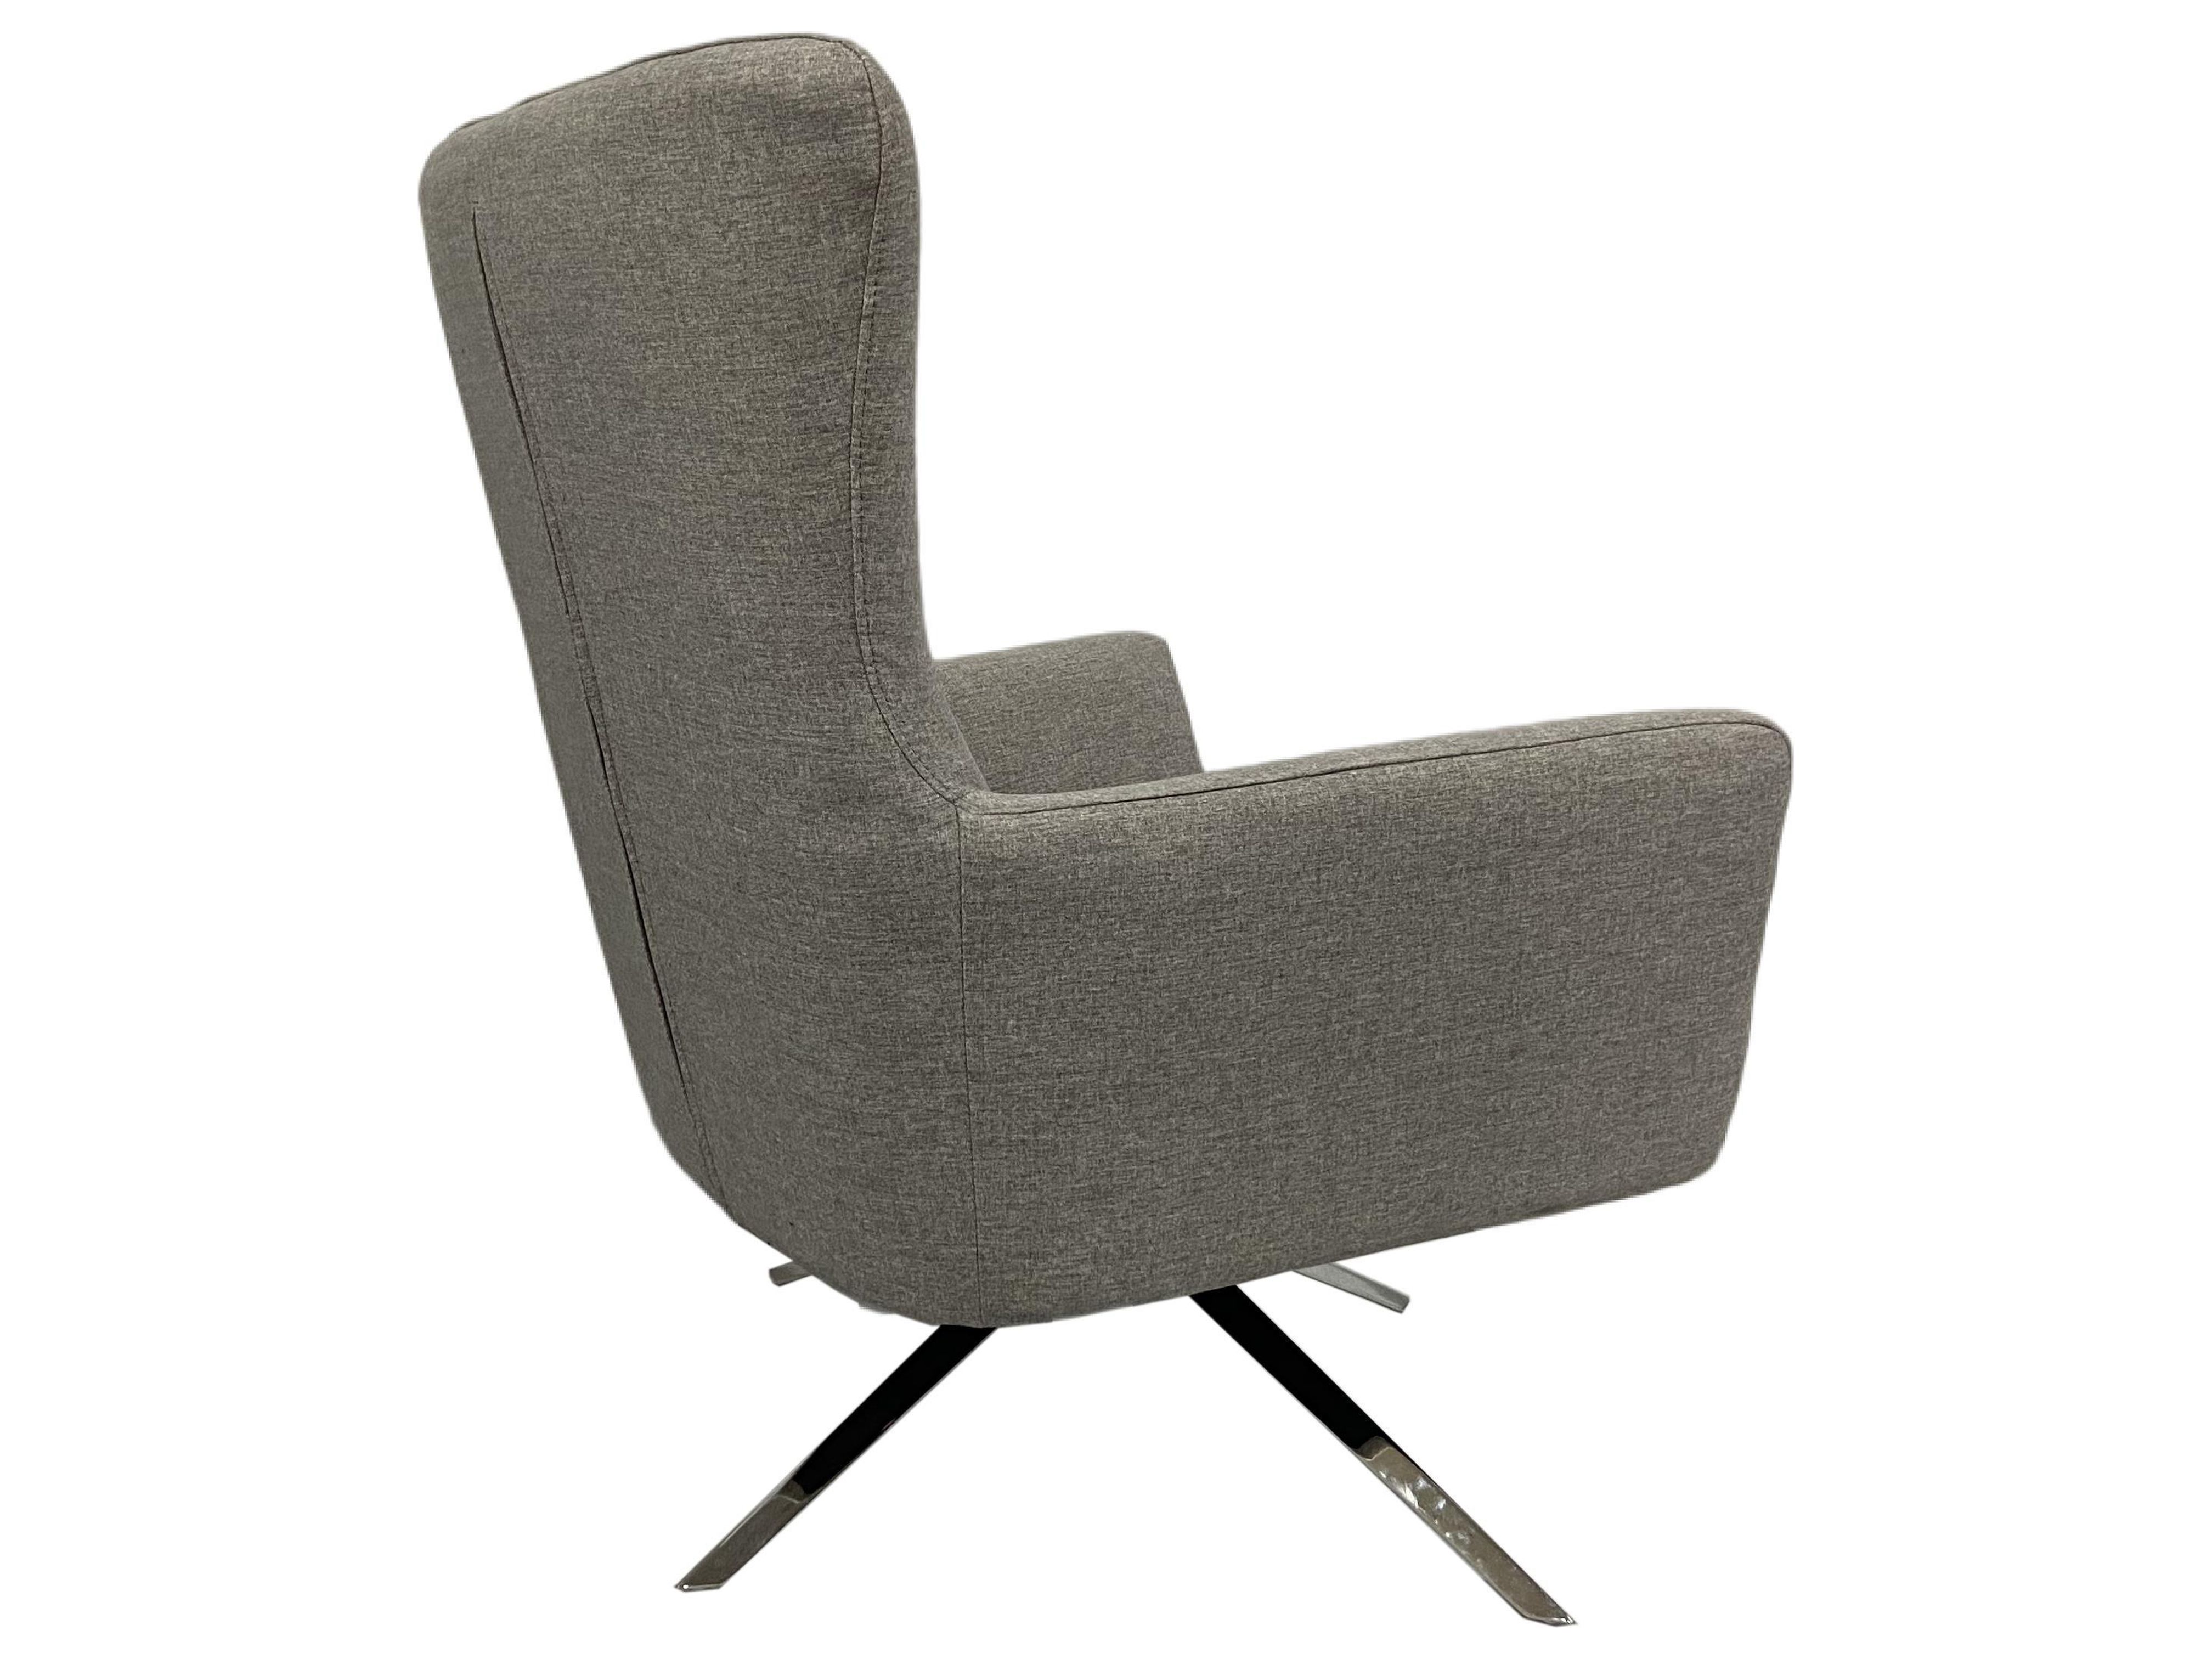 UBesGoo Modern Style Comfortable Swivel Lounge Chair - image 3 of 7